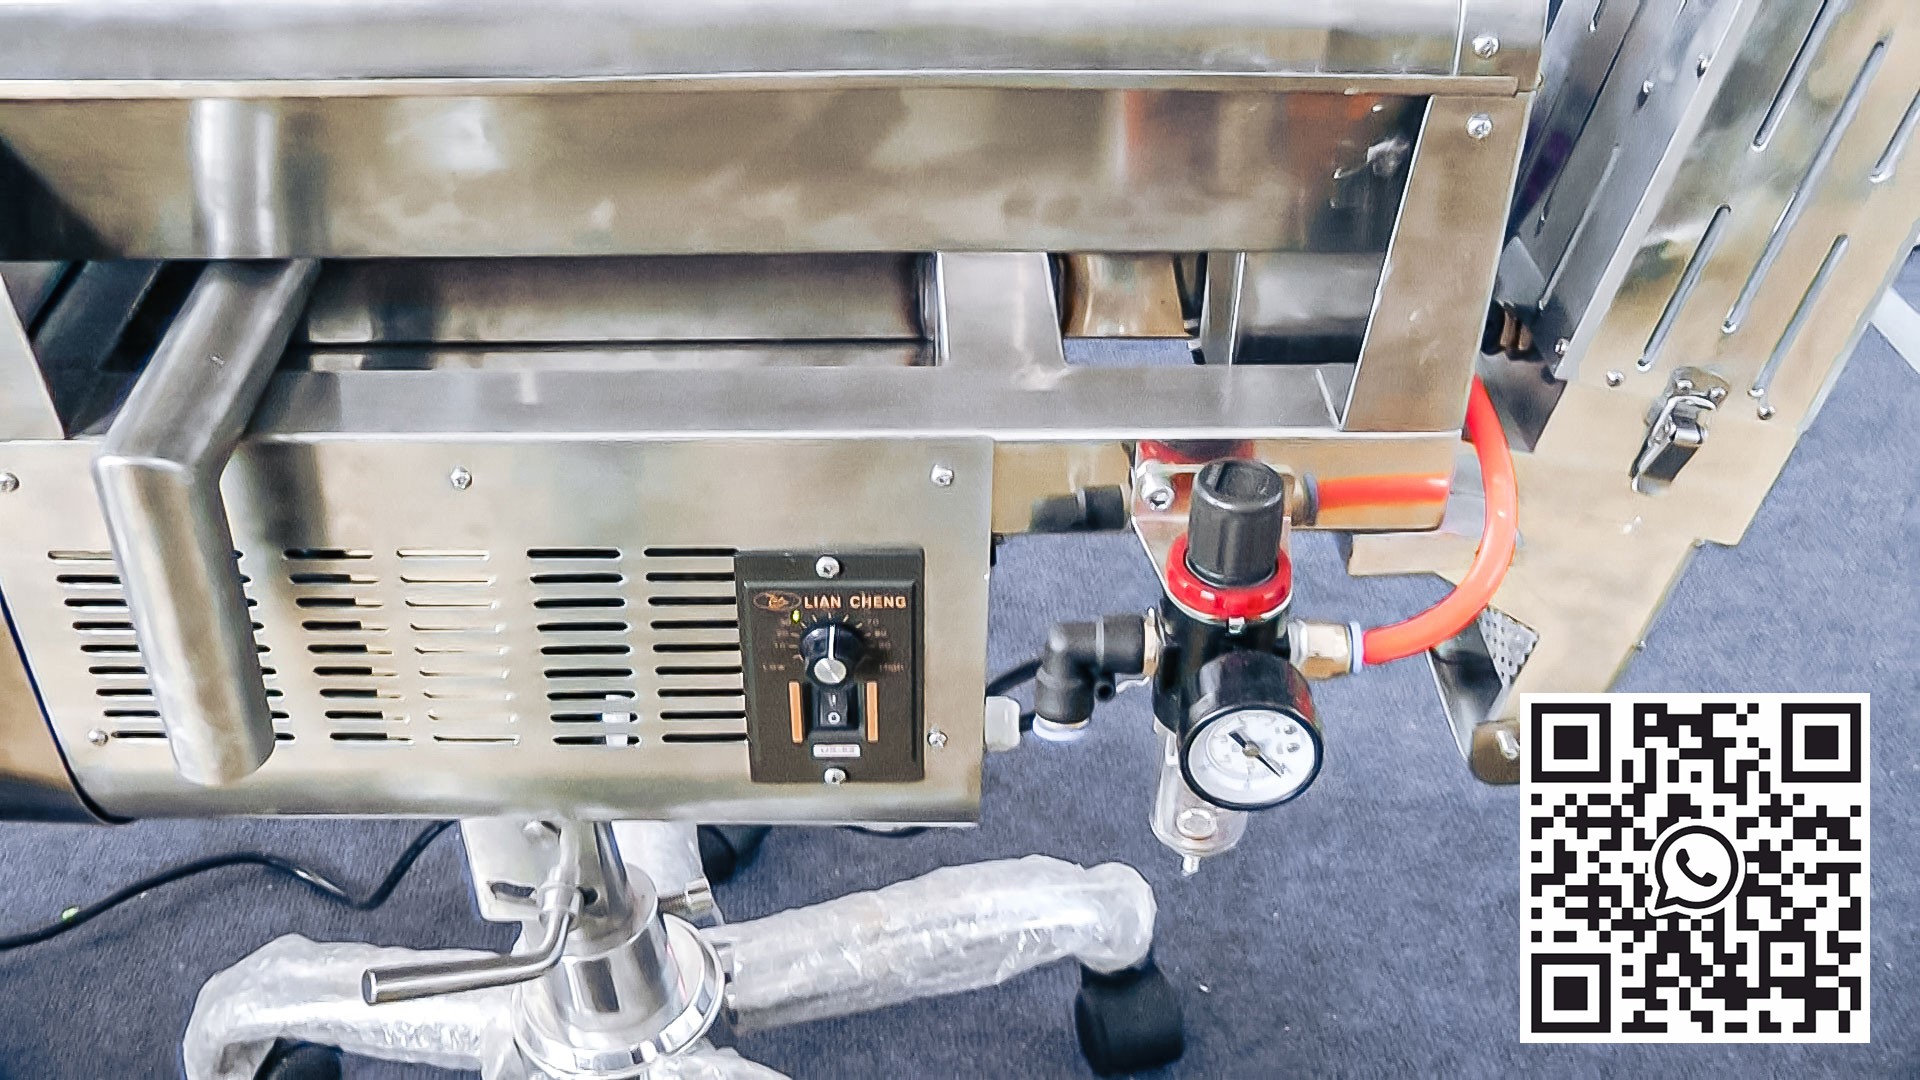 Automatisk utstyr for å fjerne støv og sjekke piller i farmasøytisk produksjon